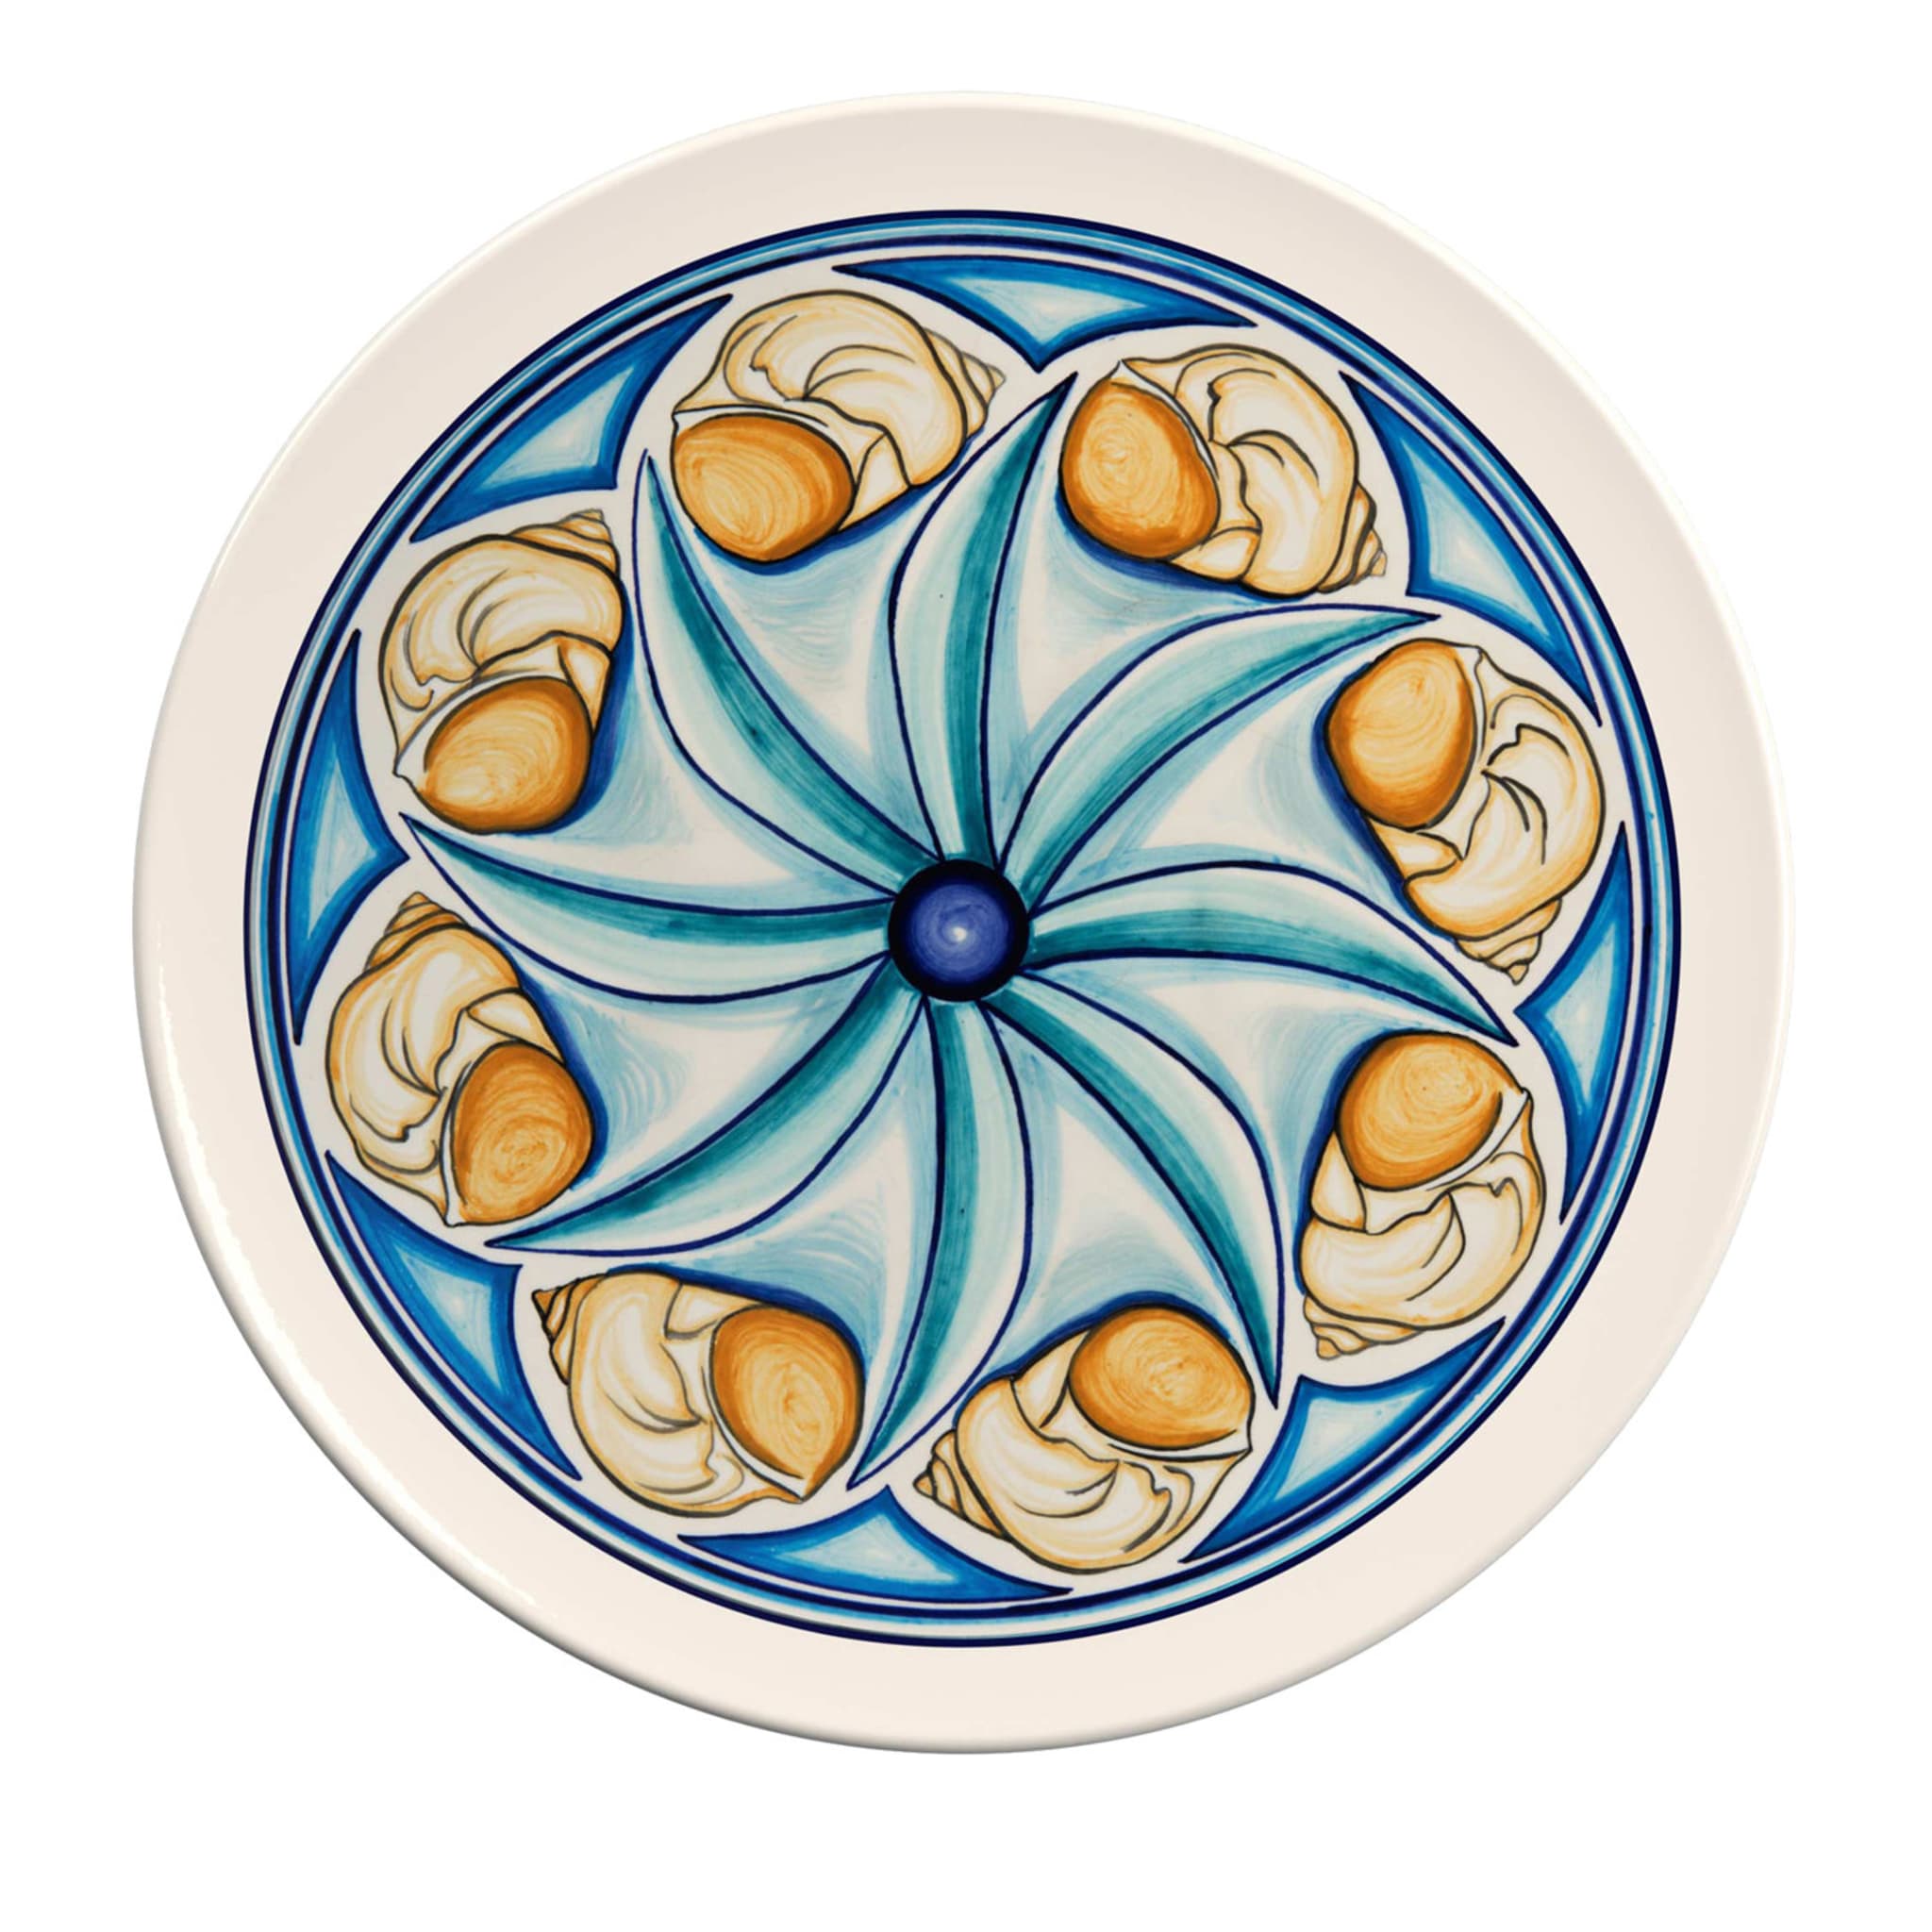 Colapesce Conchiglie Decorative Plate #3 Crisodora